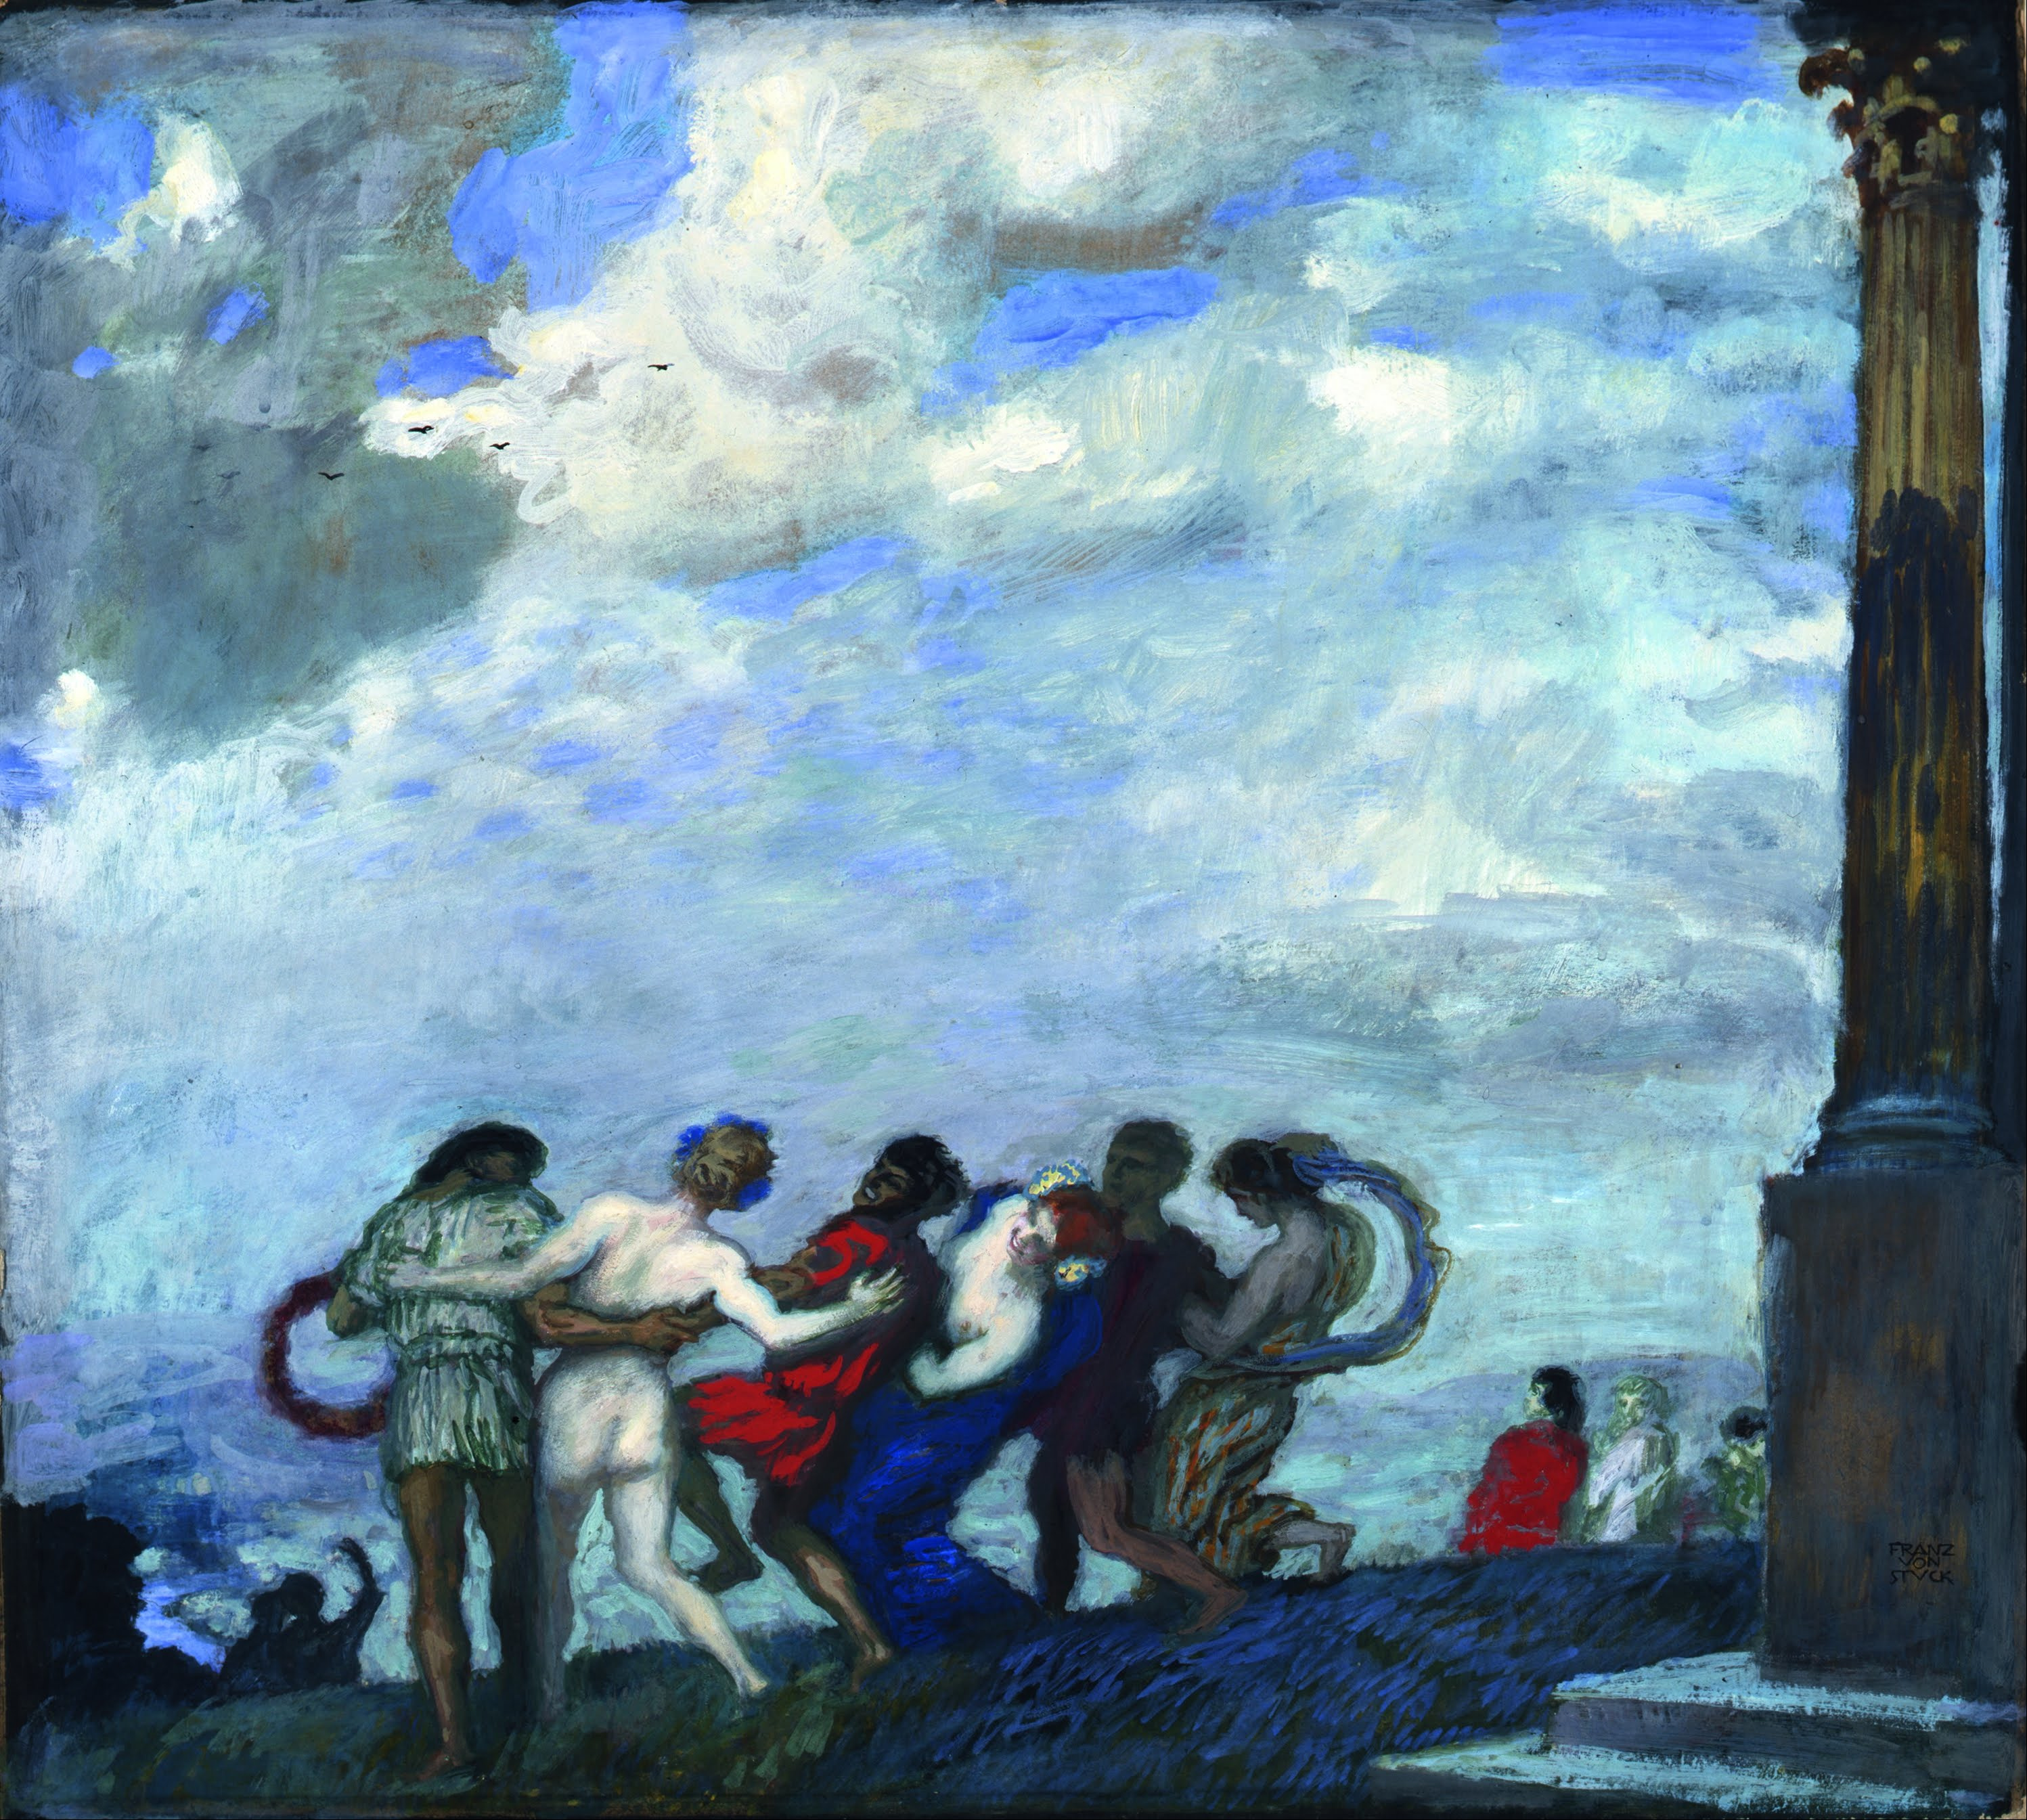 La Danse by Franz von Stuck - 1910 